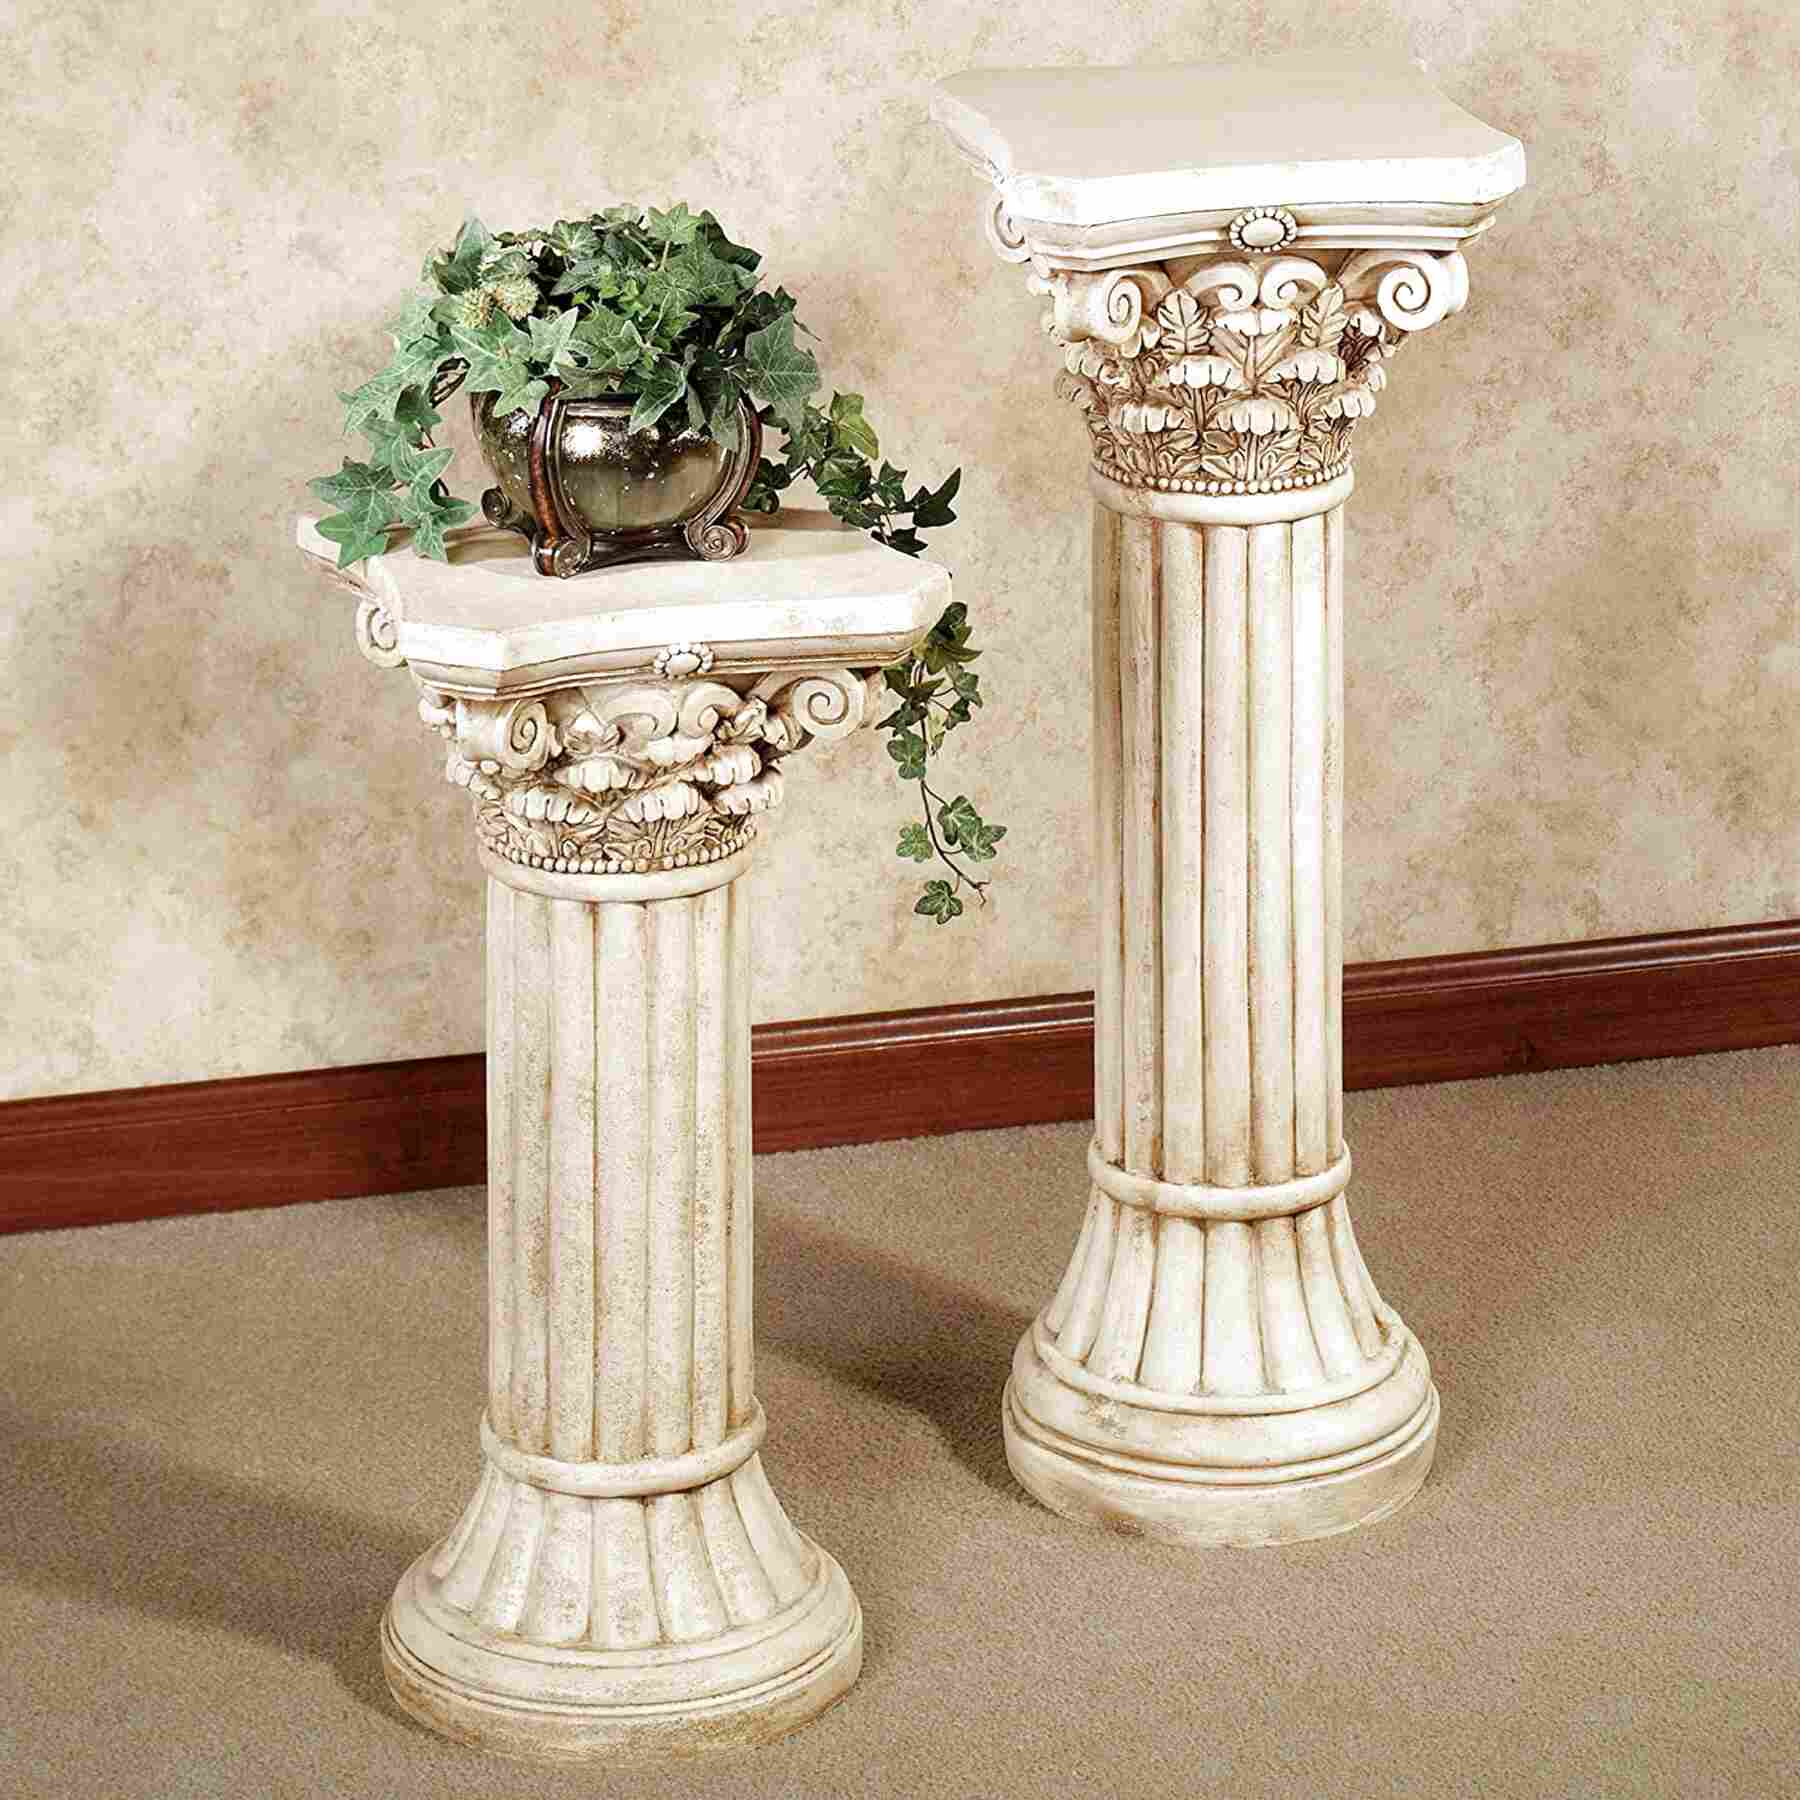 Column Pedestal for sale in UK | 63 used Column Pedestals